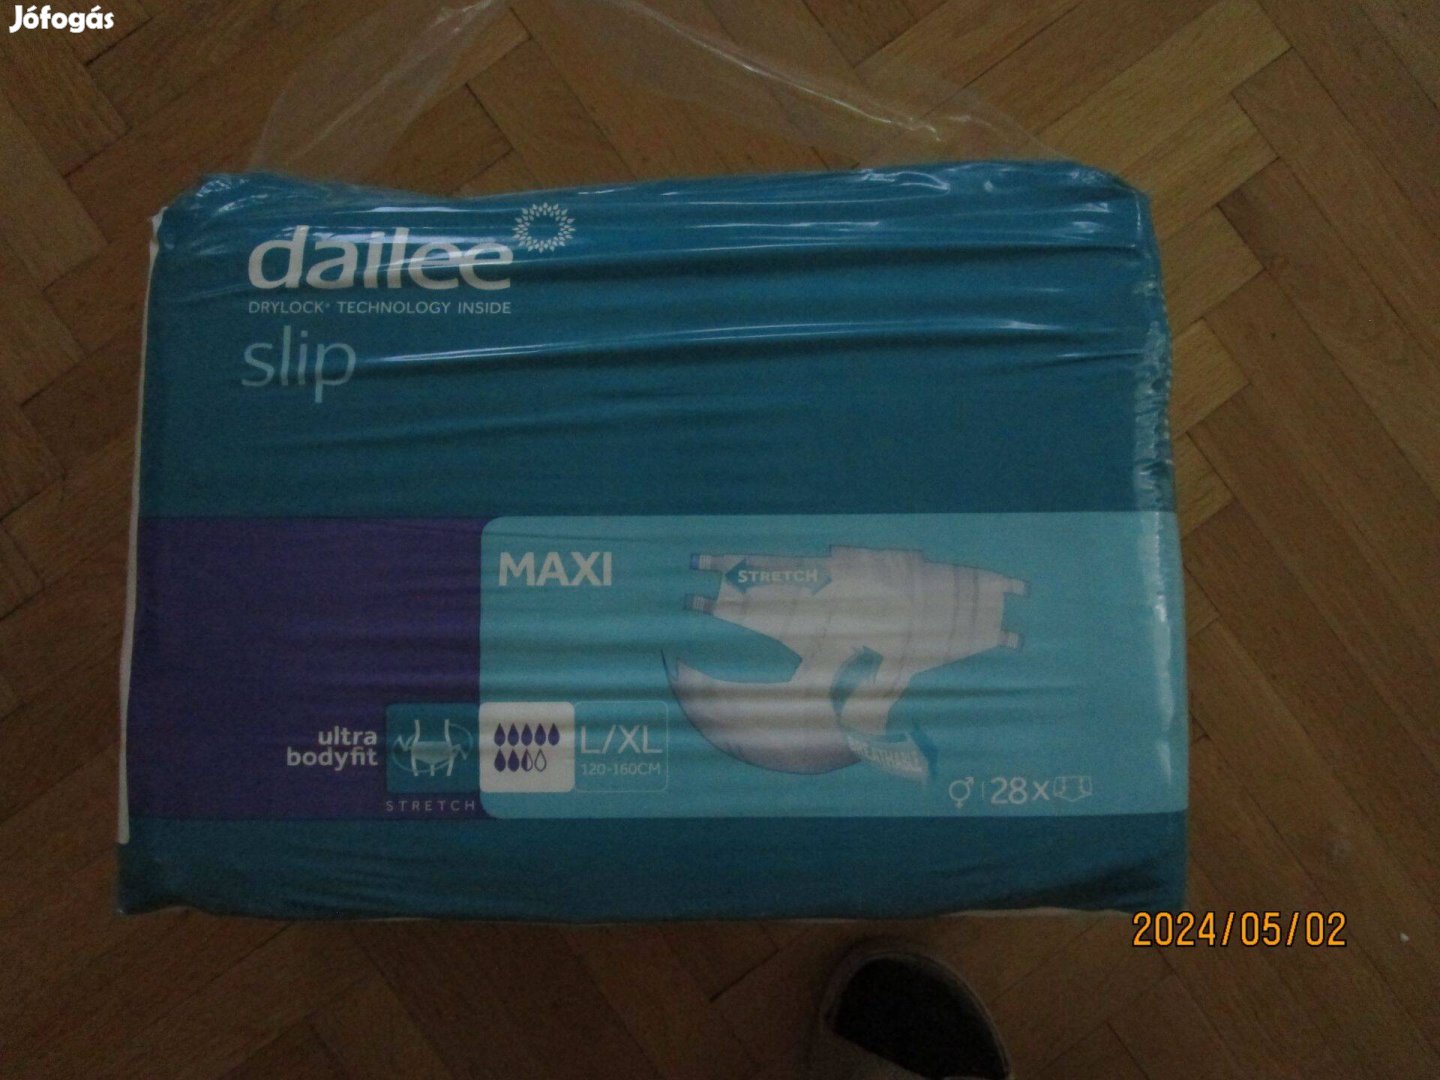 Dailee Slip Maxi L-XL vastag (3631 ml) felnőtt pelenka 28x bontatlan